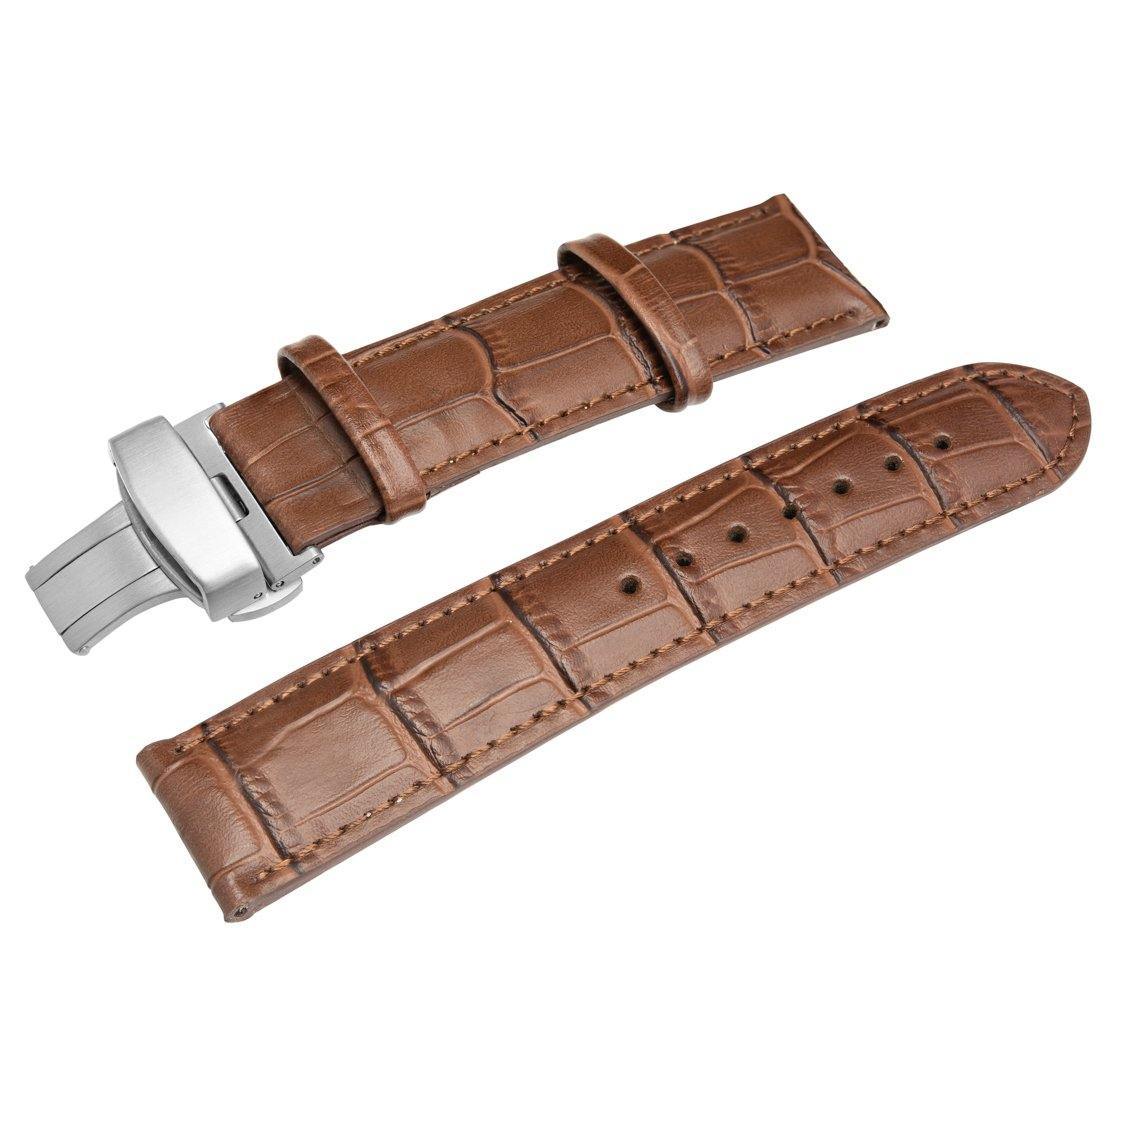 SÖNER HERITAGE A - Alligator strap in dark brown leather SÖNER Watch straps.